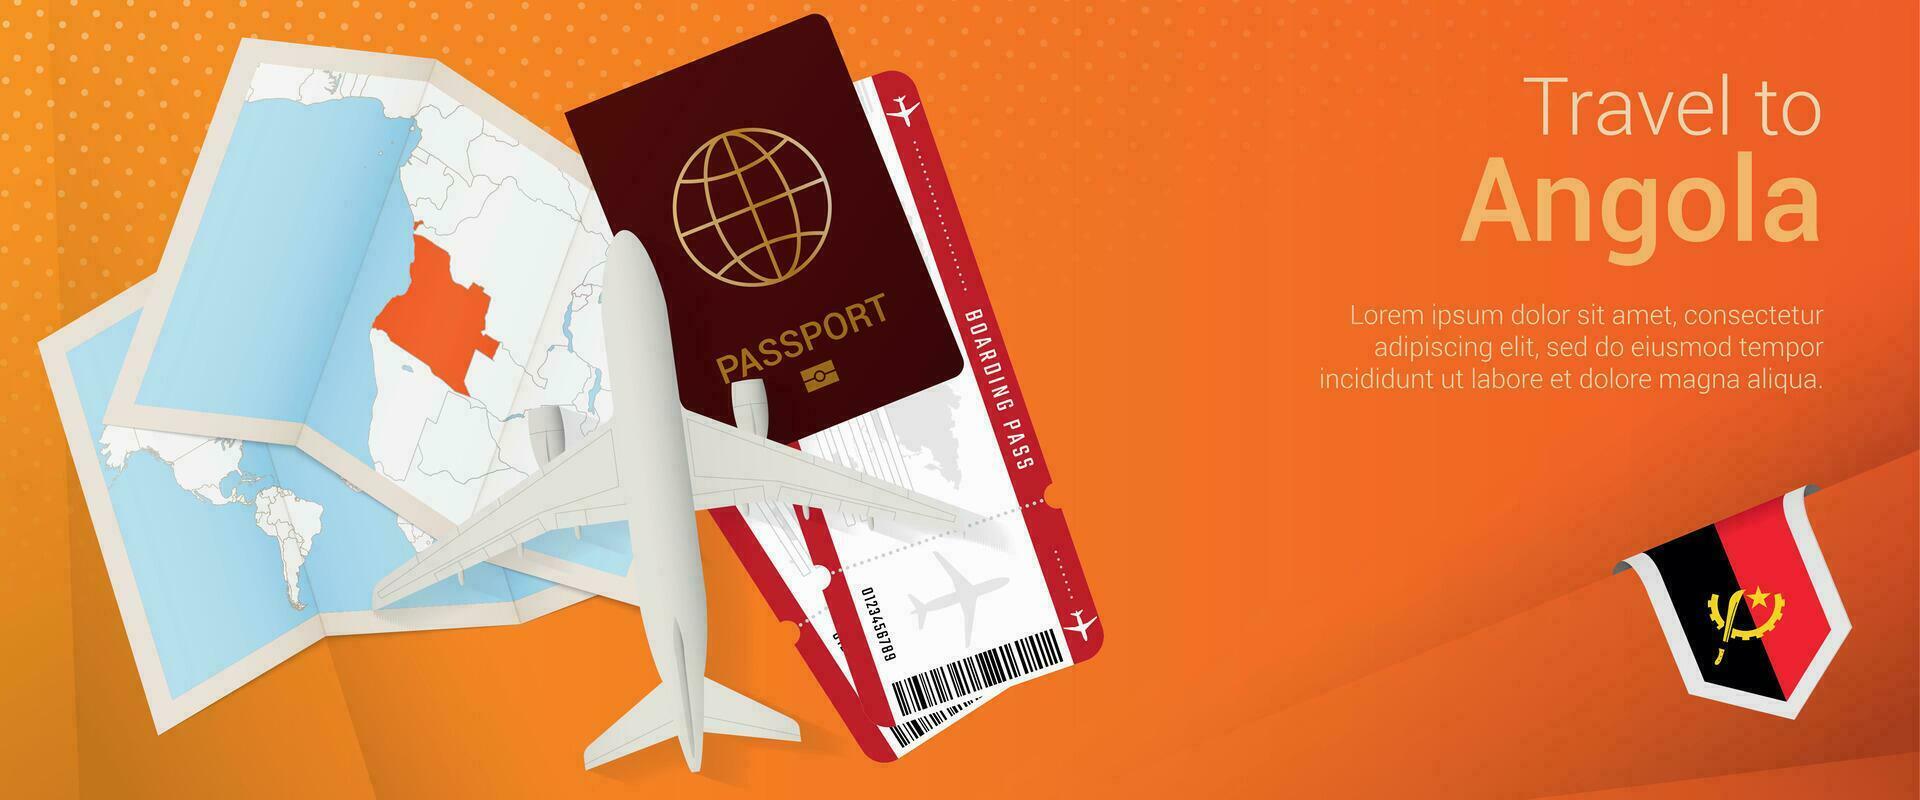 Voyage à angola pop-under bannière. voyage bannière avec passeport, des billets, avion, embarquement passer, carte et drapeau de Angola. vecteur